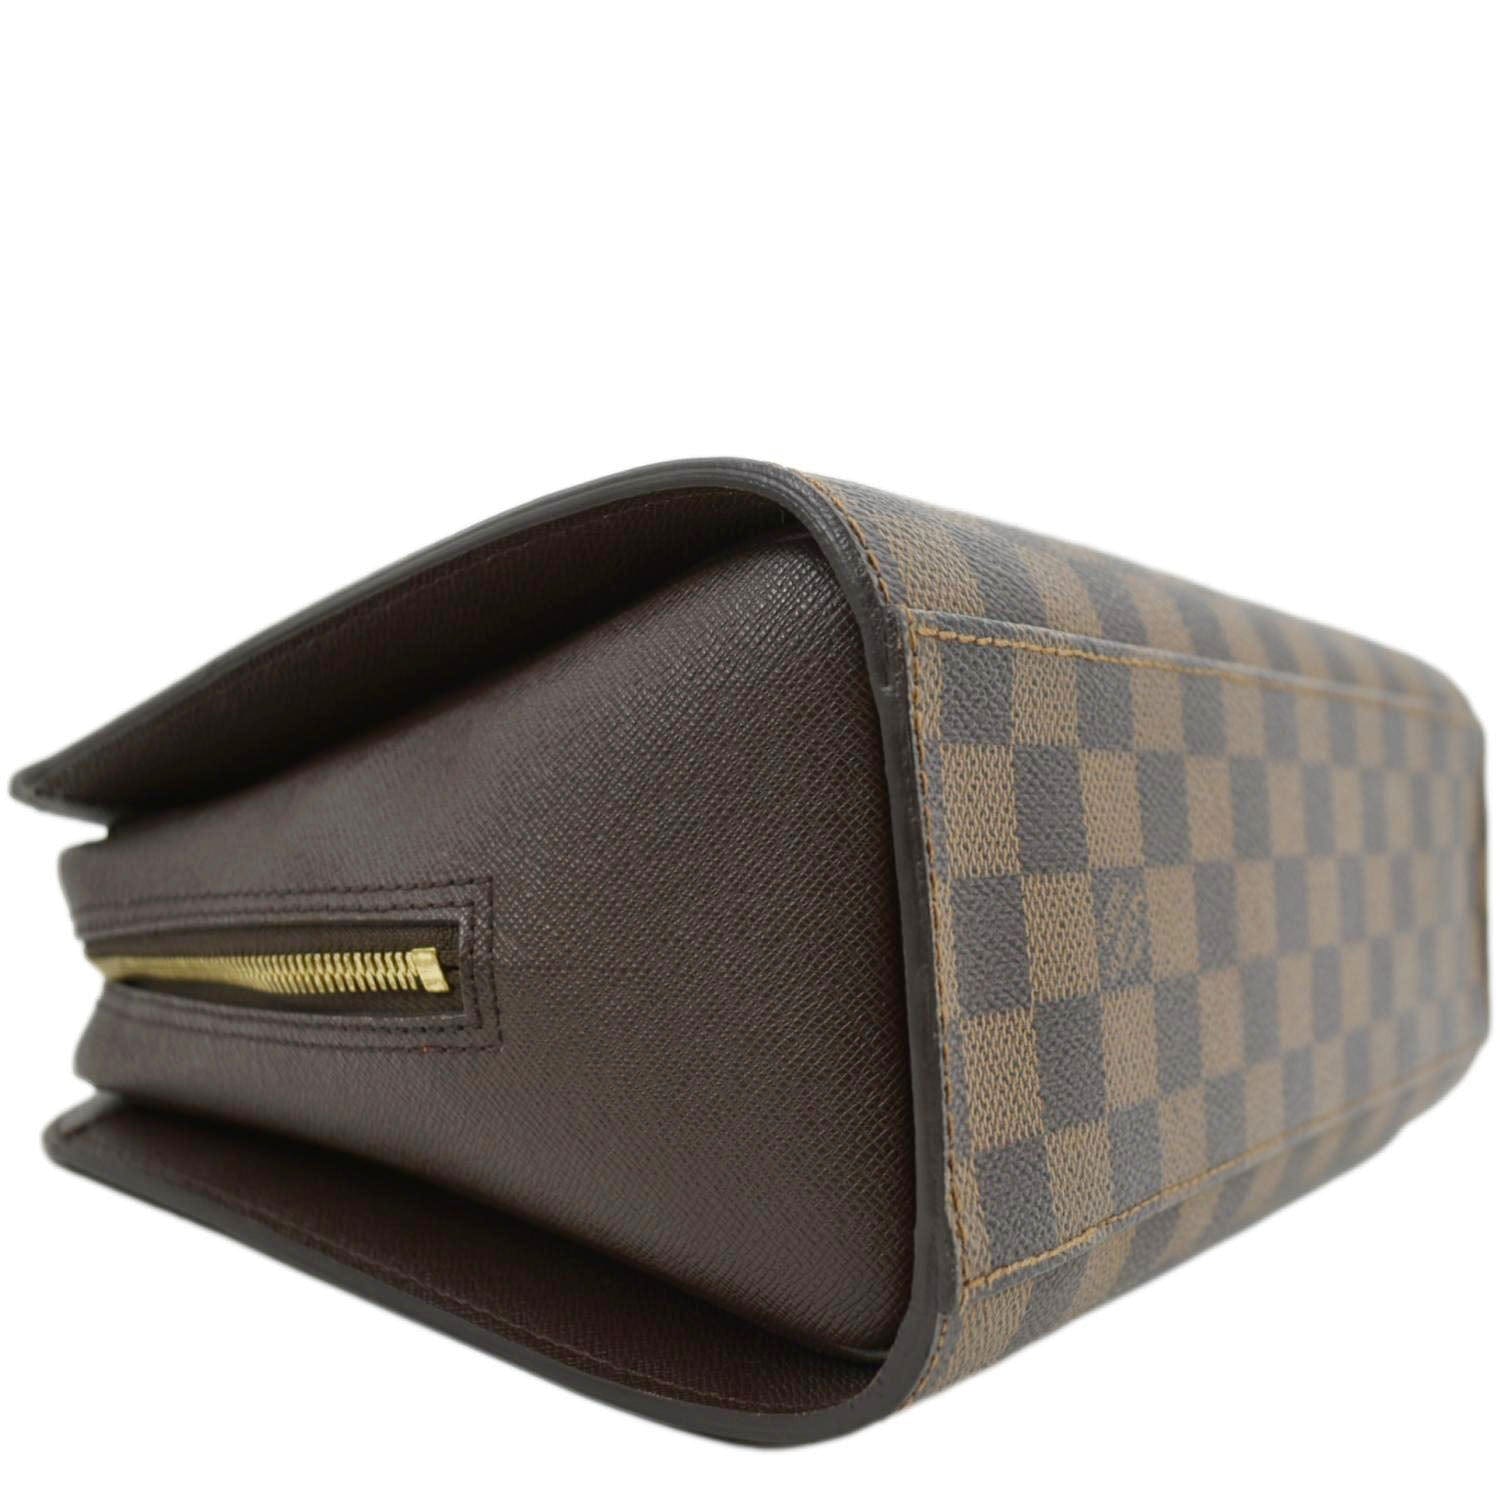 Shop for Louis Vuitton Damier Ebene Canvas Leather Triana Bag